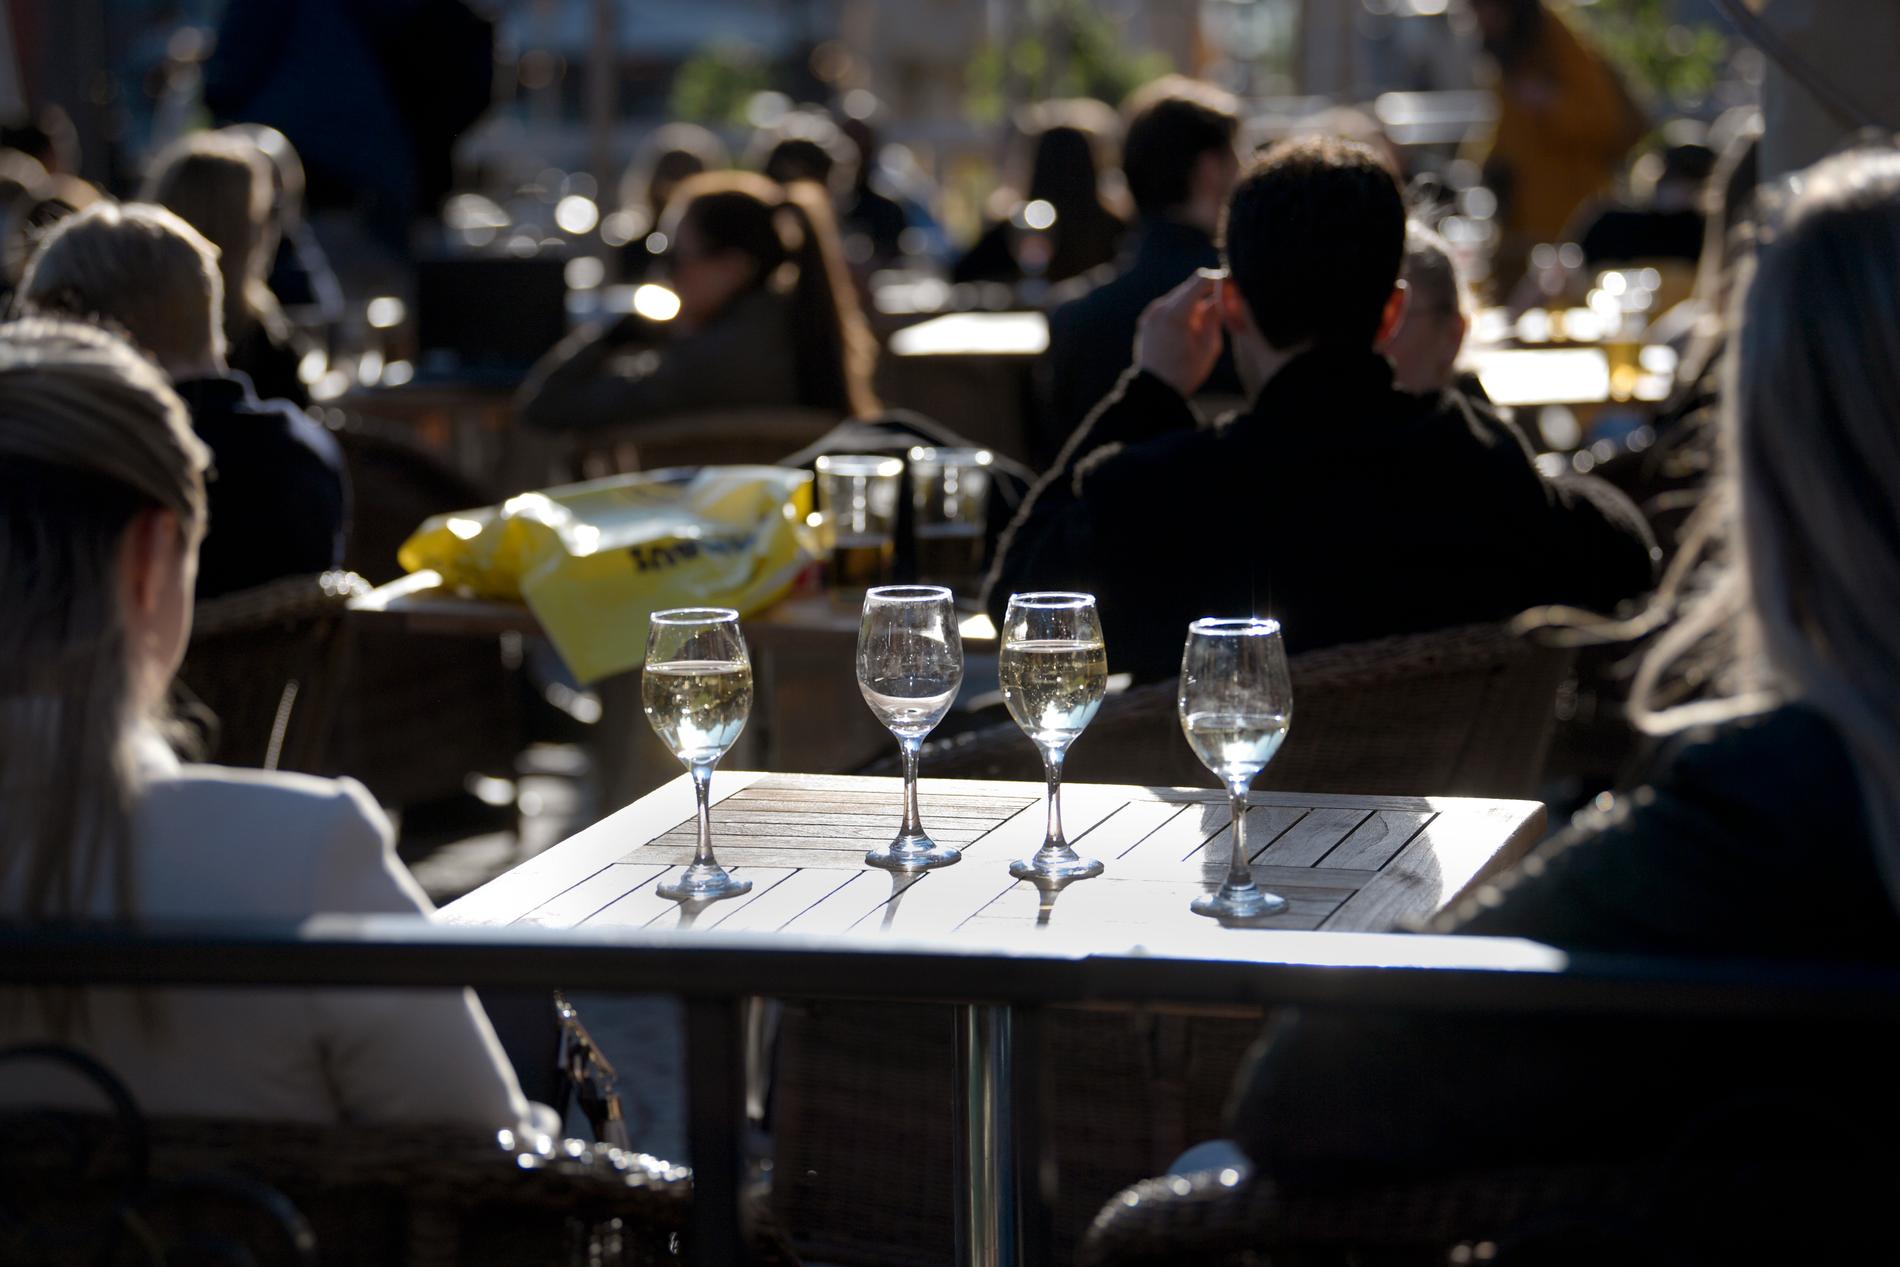 Trängsel på uteserveringar kan leda till att restauranger och barer tvingas stänga. Bilden är tagen på Medborgarplatsen i Stockholm den 26 mars. Arkivbild.